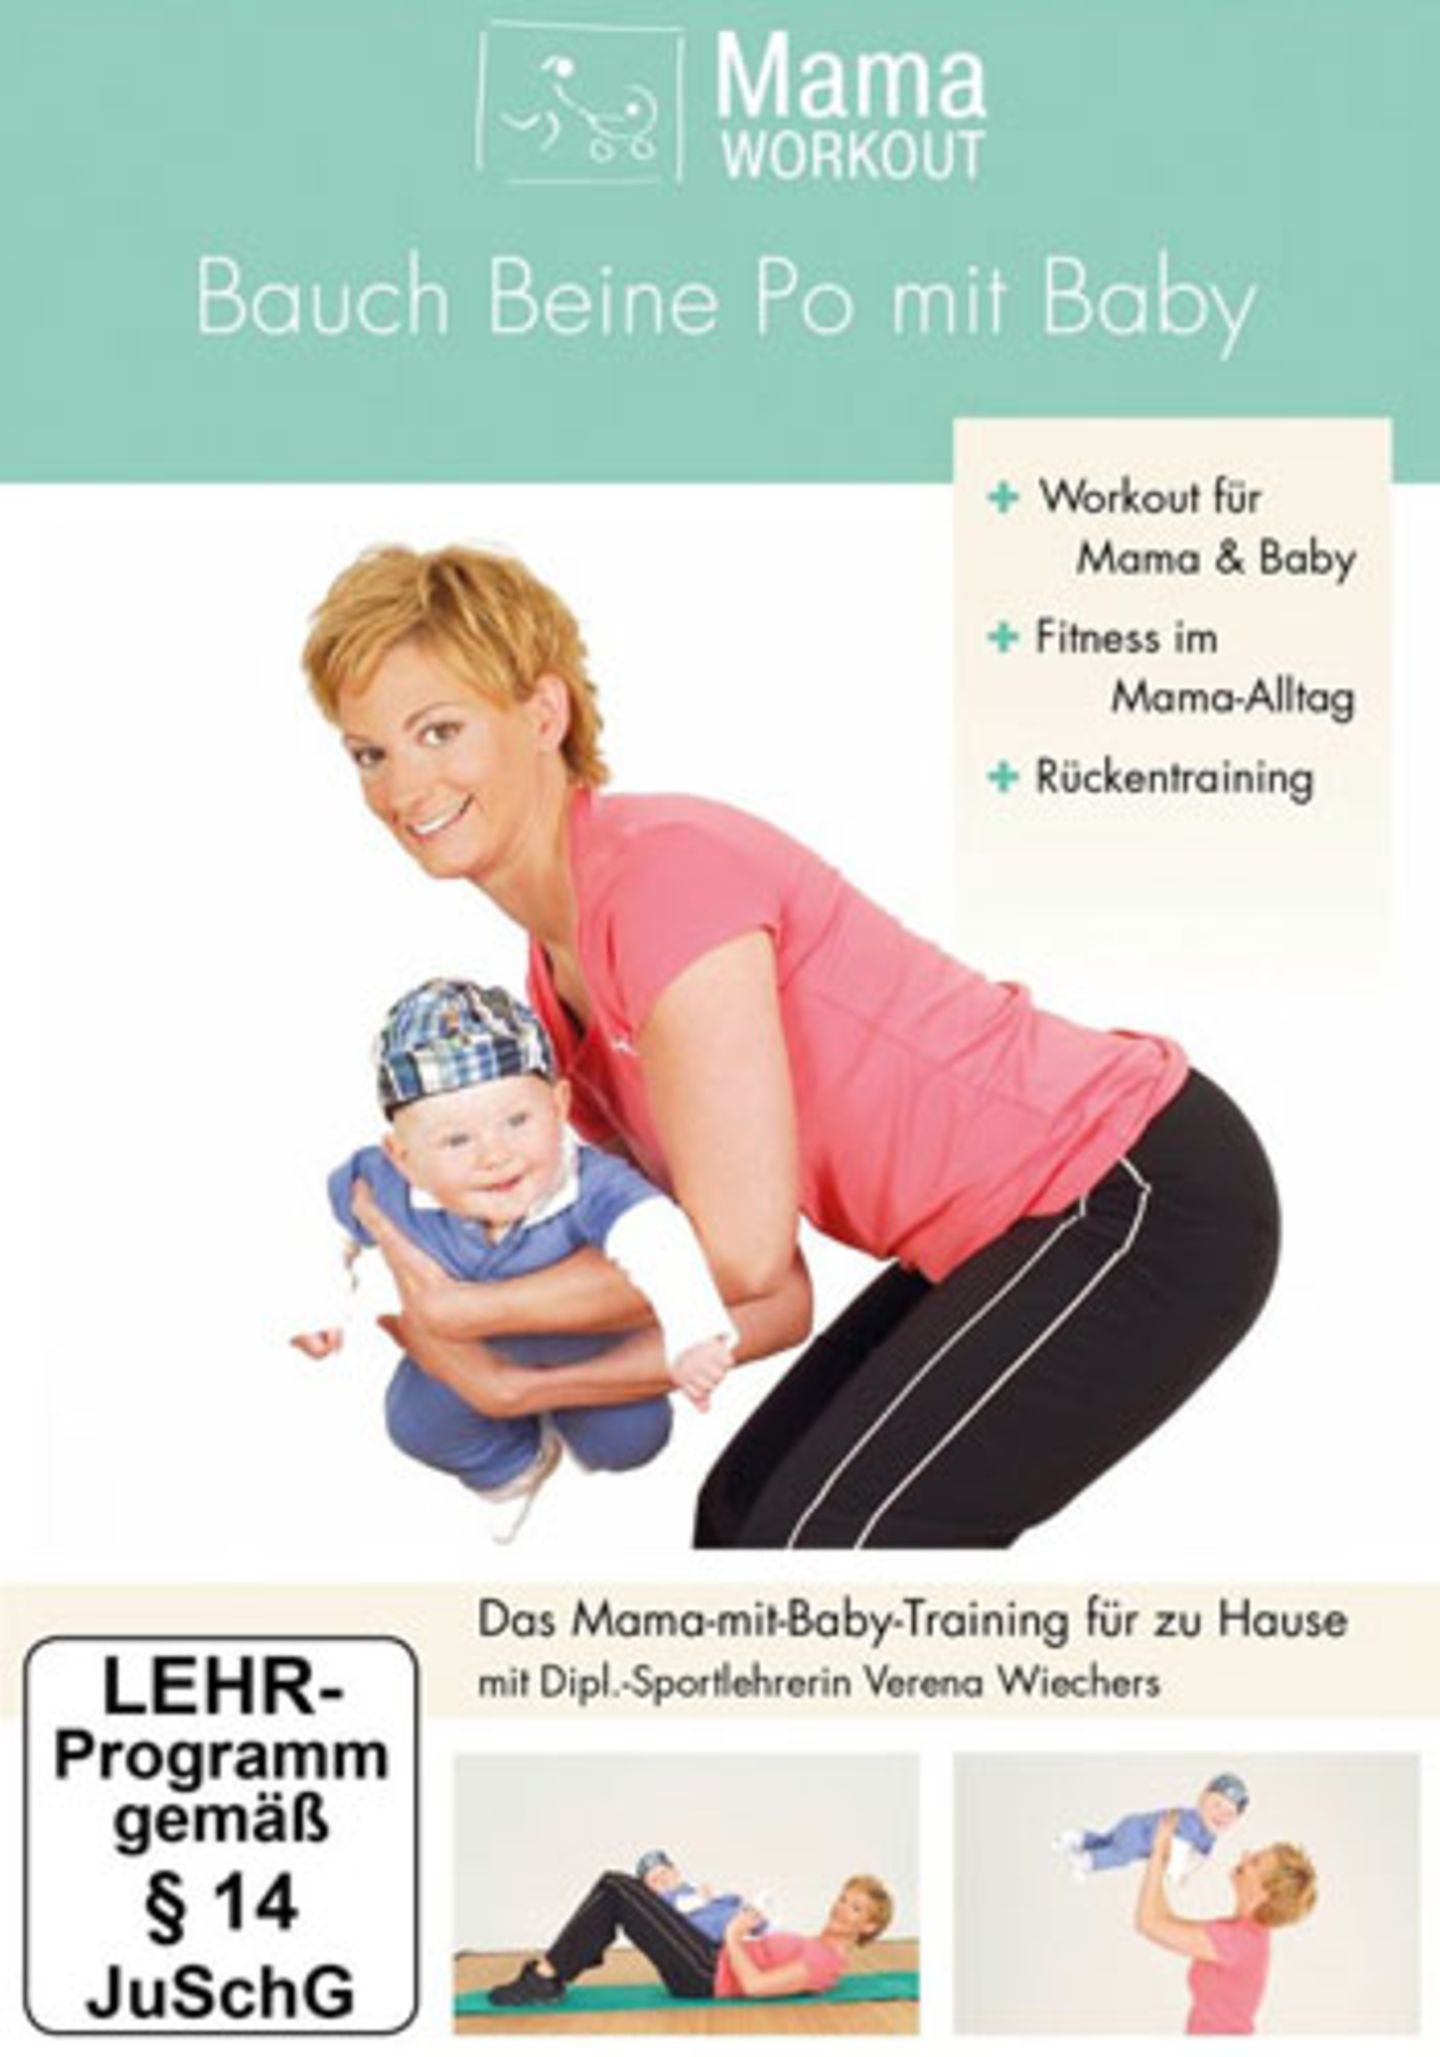 Mama-Workout - Bauch Beine Po mit Baby